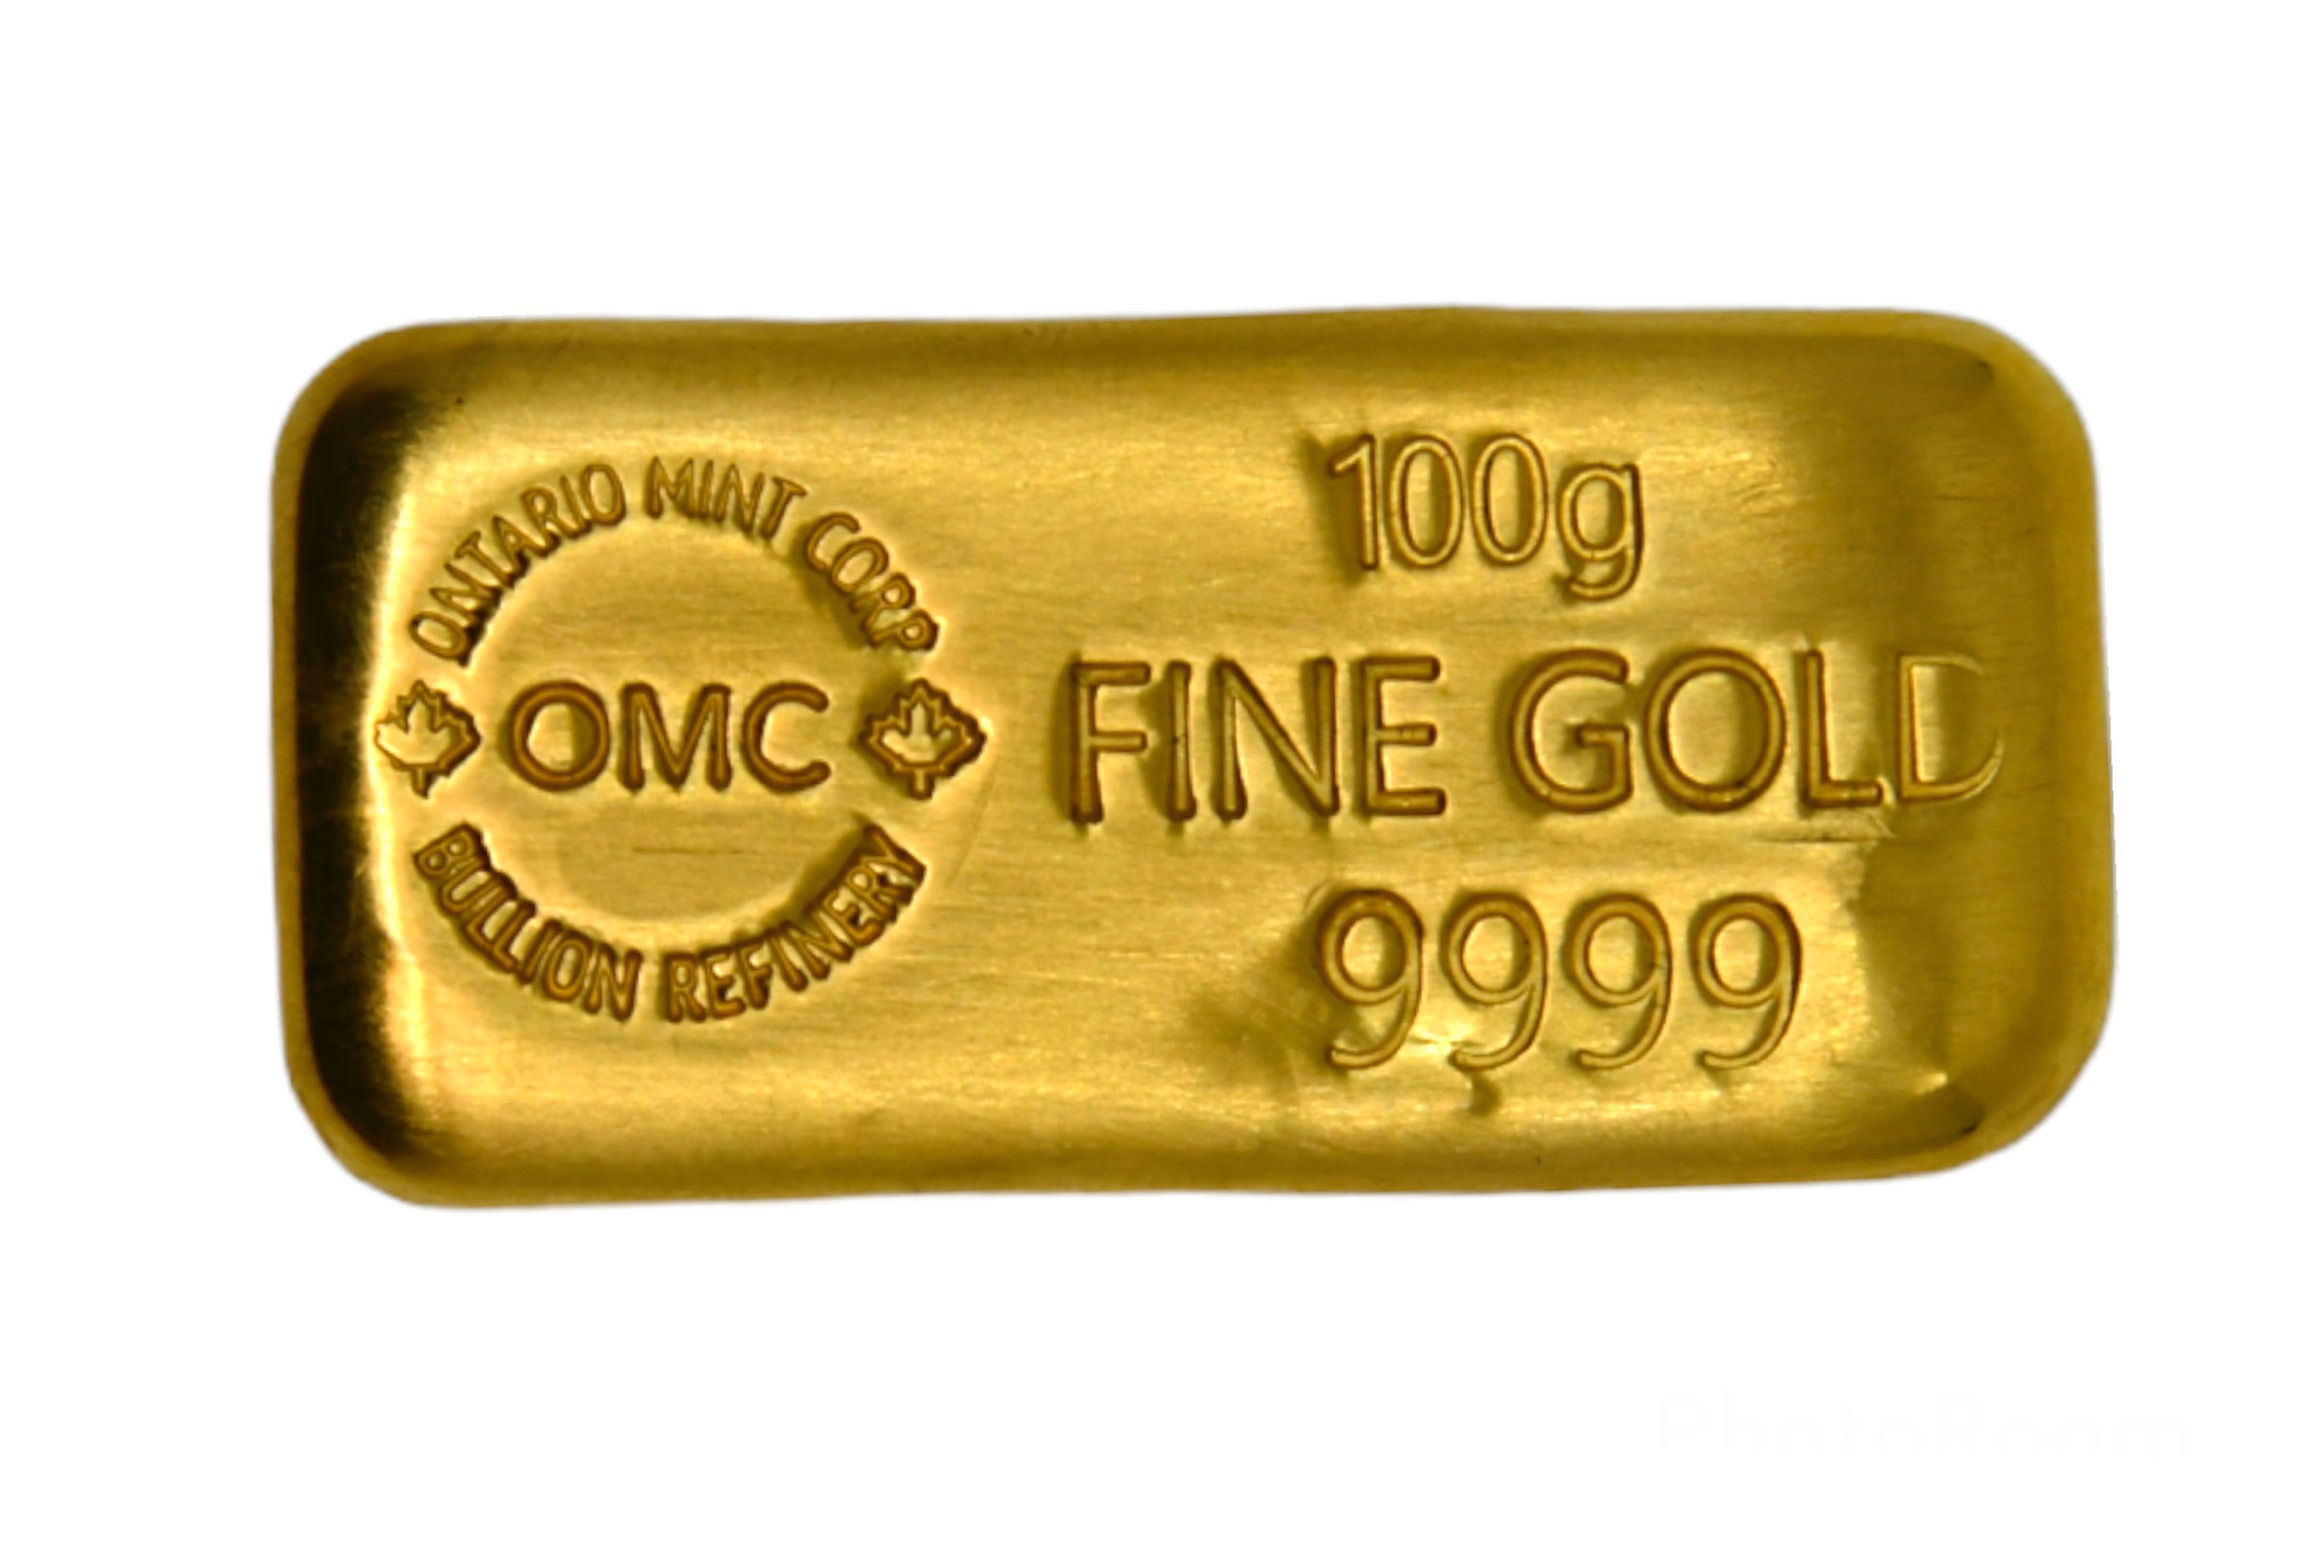 100 g OMC gold bar